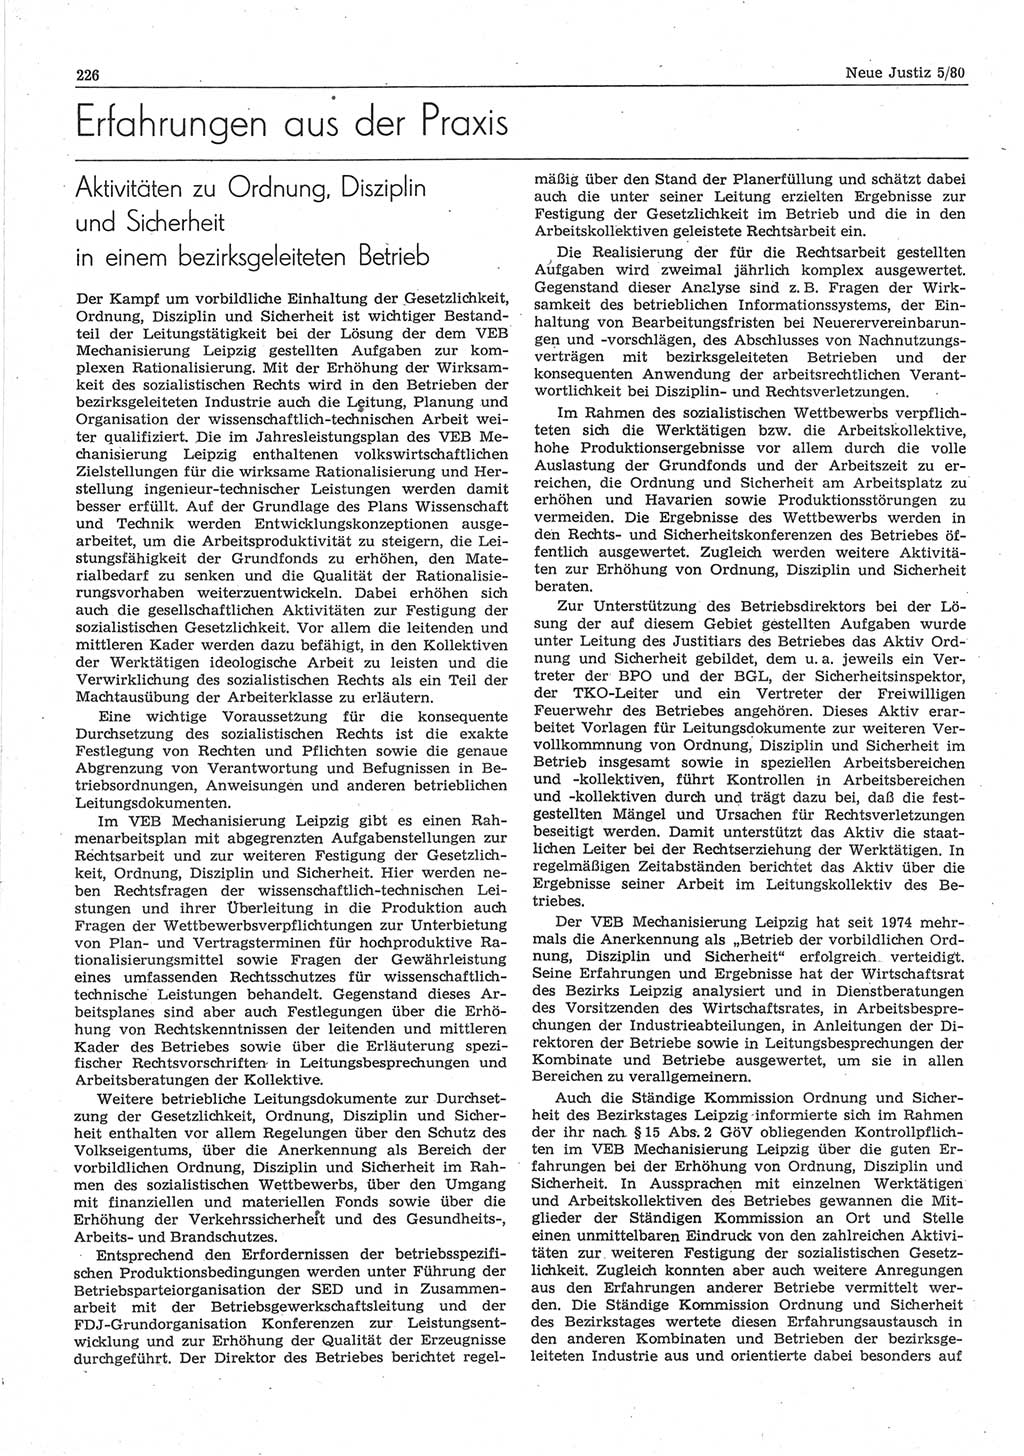 Neue Justiz (NJ), Zeitschrift für sozialistisches Recht und Gesetzlichkeit [Deutsche Demokratische Republik (DDR)], 34. Jahrgang 1980, Seite 226 (NJ DDR 1980, S. 226)